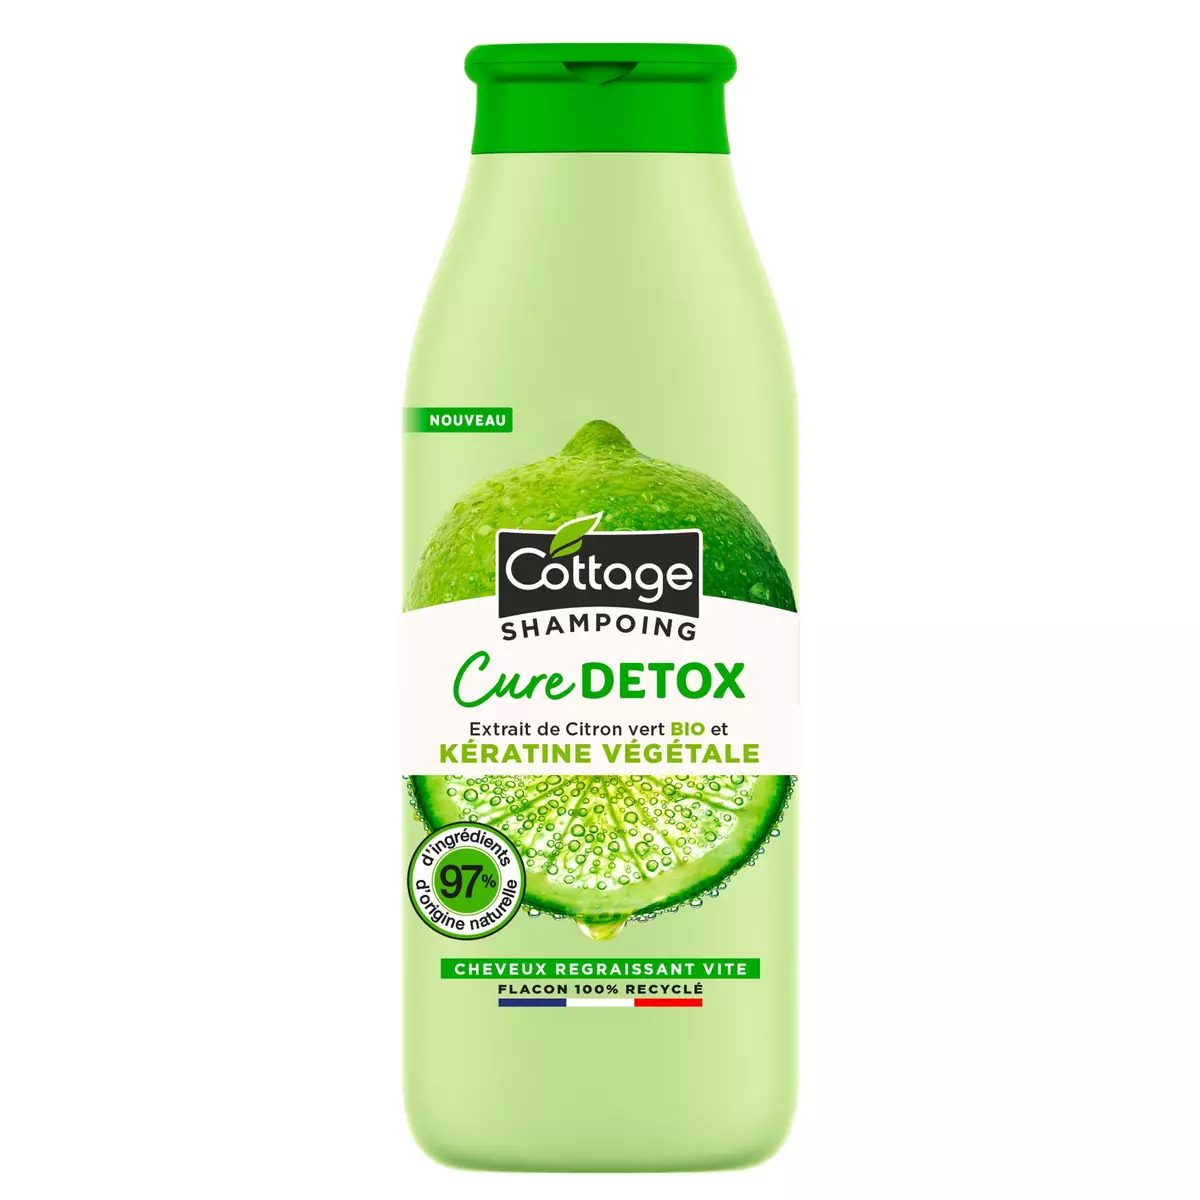 COTTAGE Shampooing cure detox citron vert bio et kératine végétale 250ml